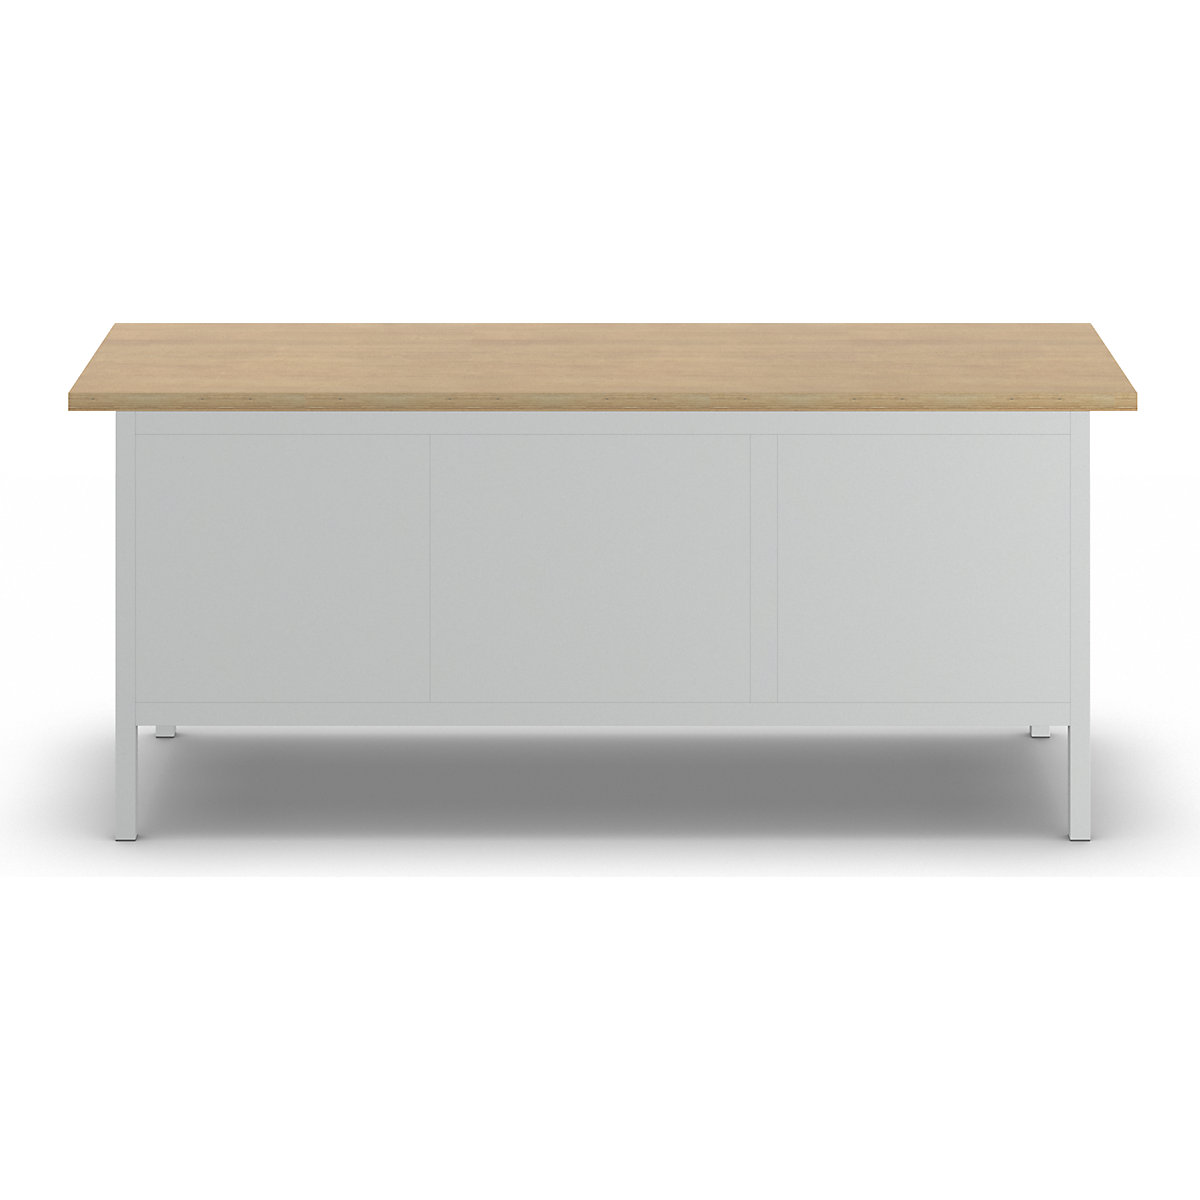 Stół warsztatowy z blatem z litego buku, konstrukcja ramowa – LISTA (Zdjęcie produktu 8)-7